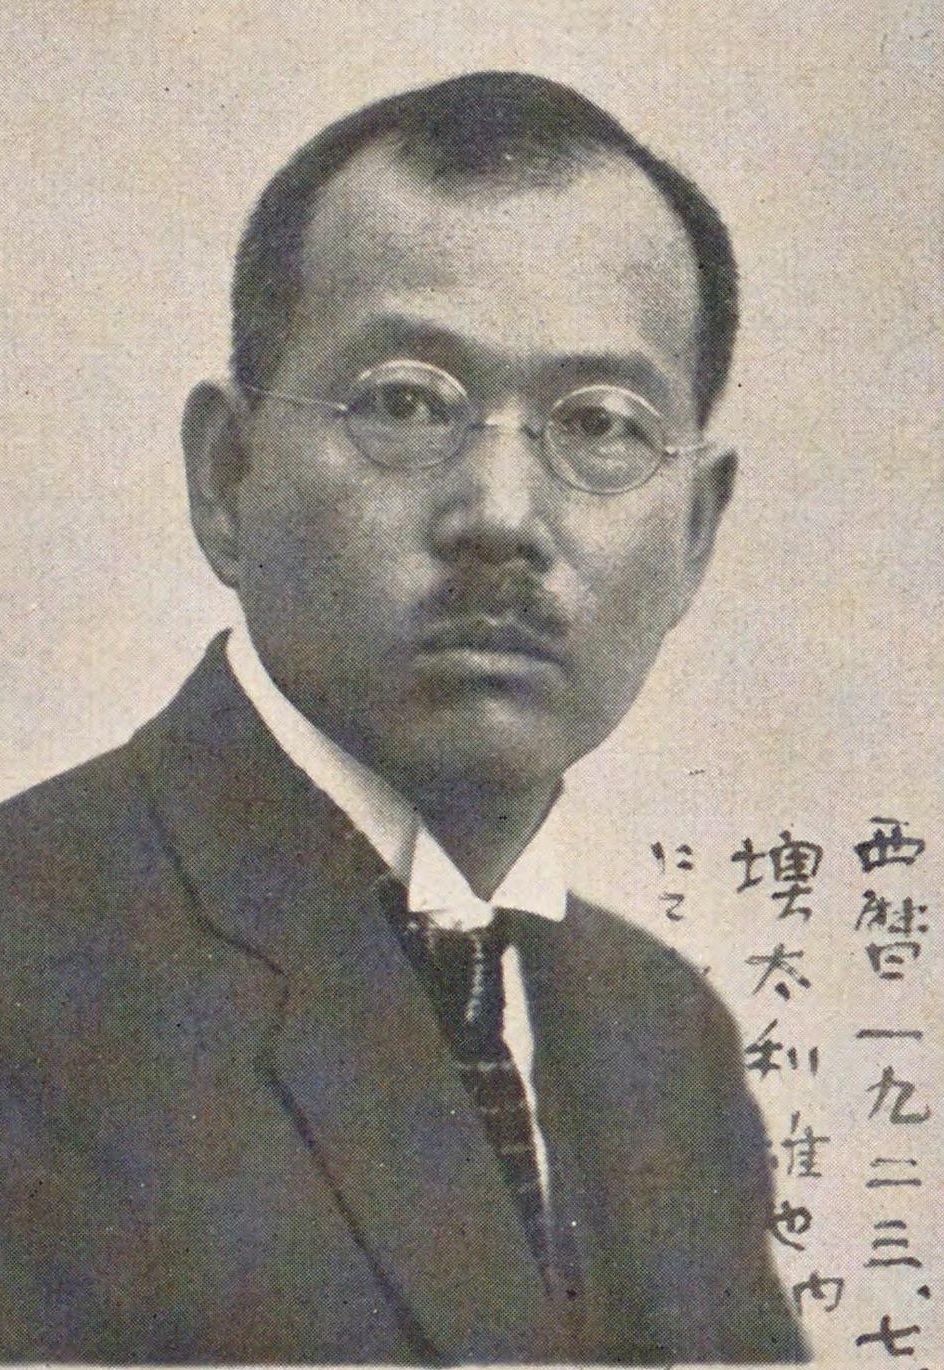 Portrait of SAITO Mokichi1